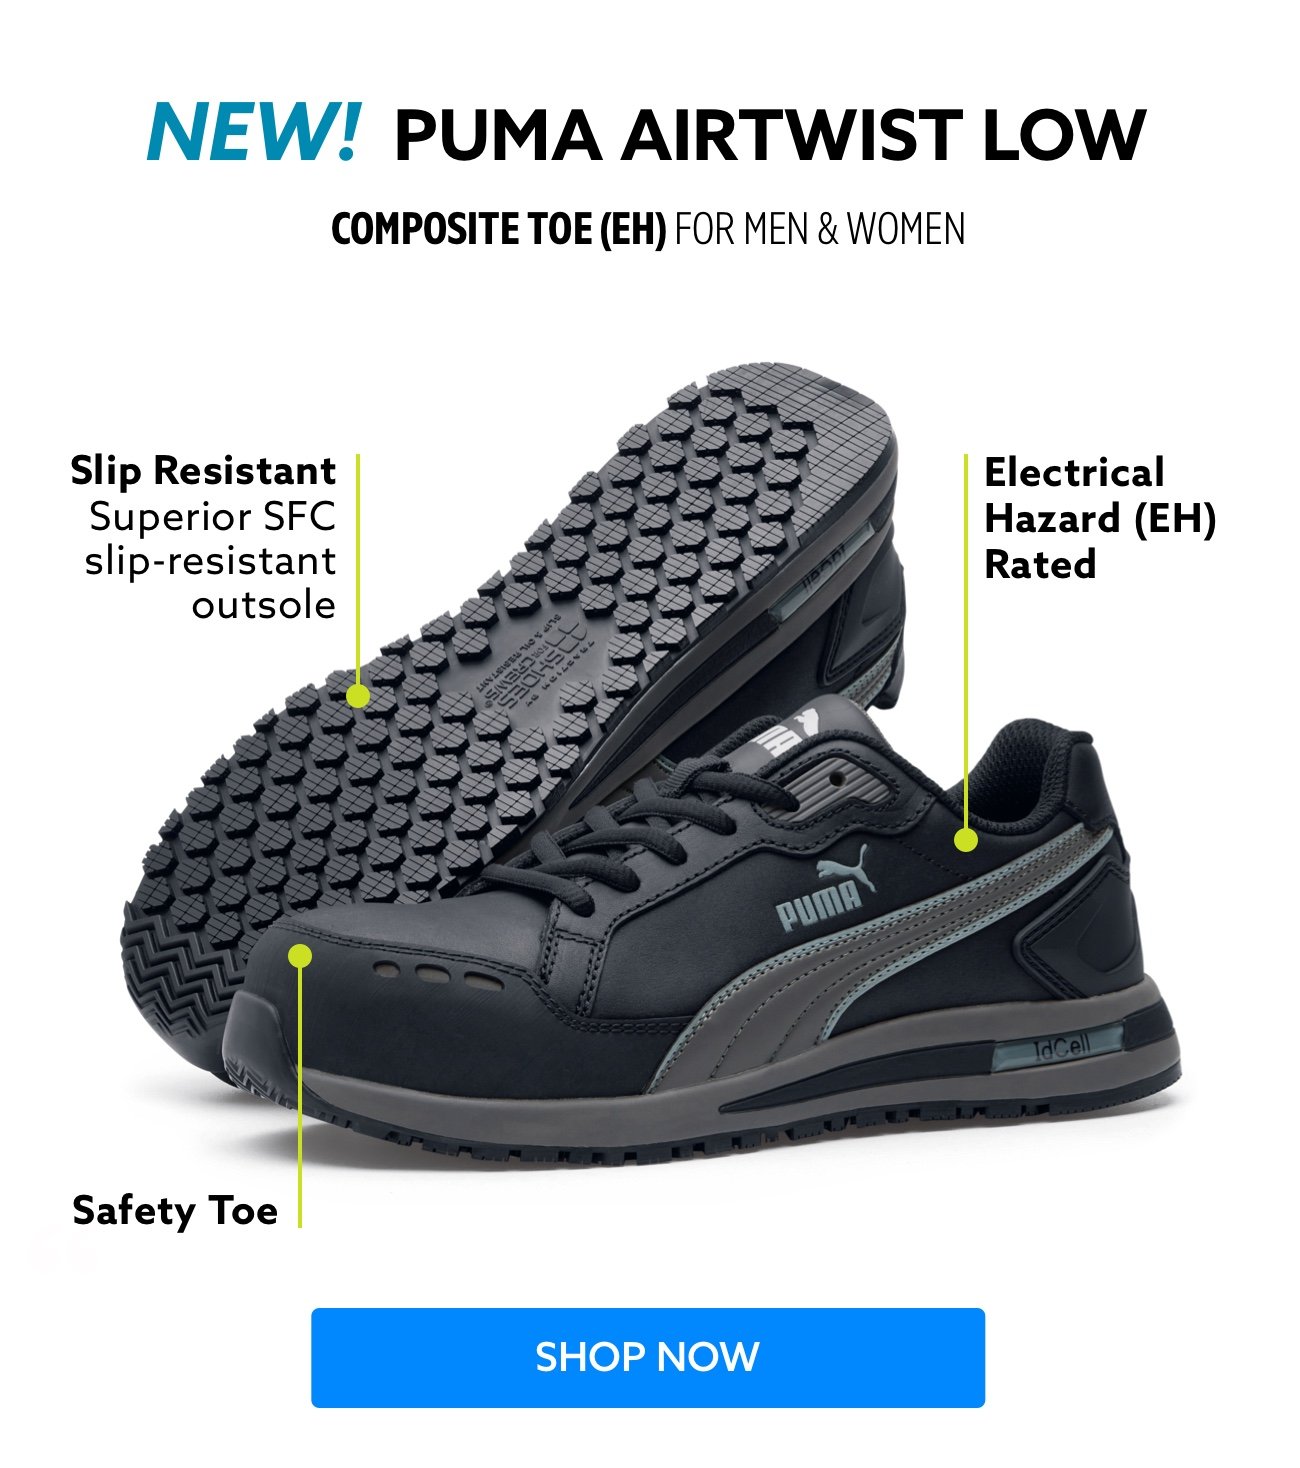 New Puma Airtwist Low | Shop now